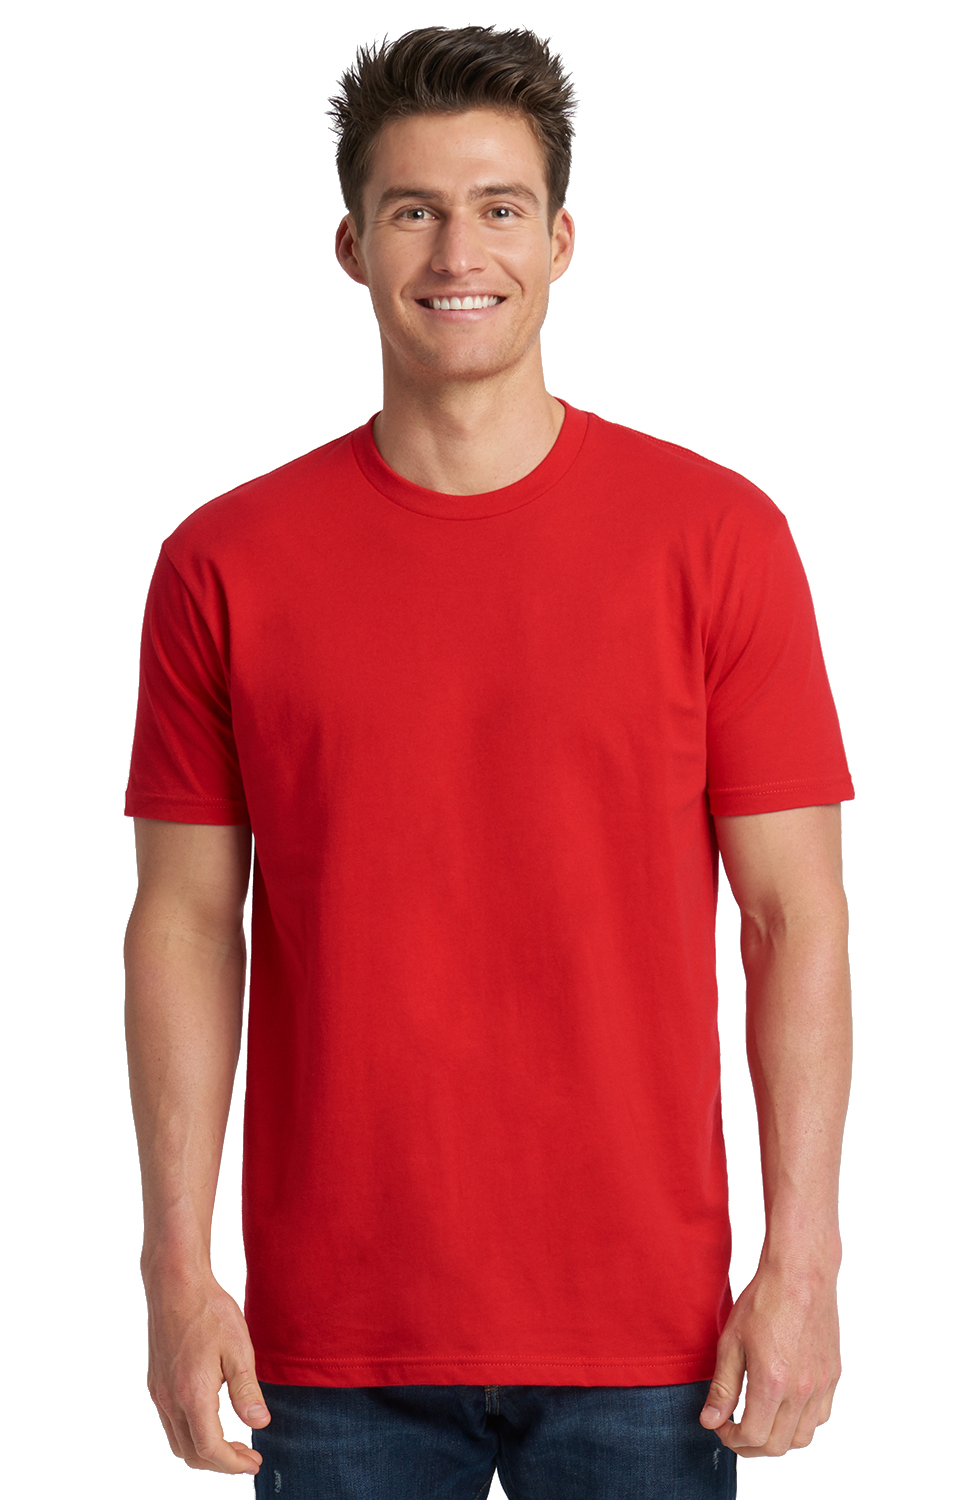 red blank tshirt